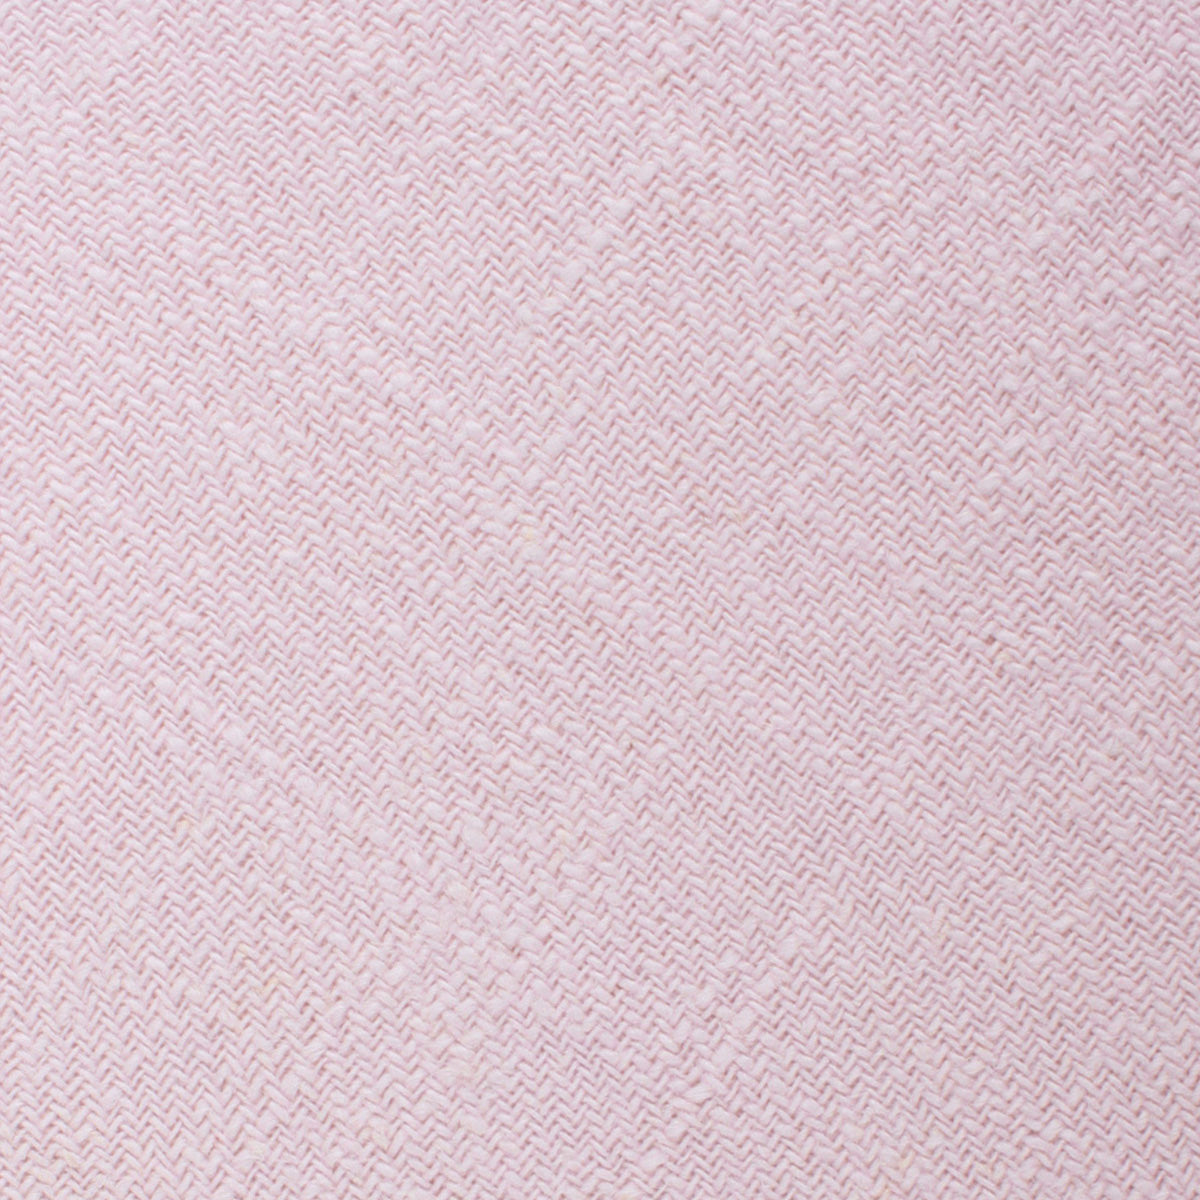 Maldivian Blush Pink Linen Fabric Swatch